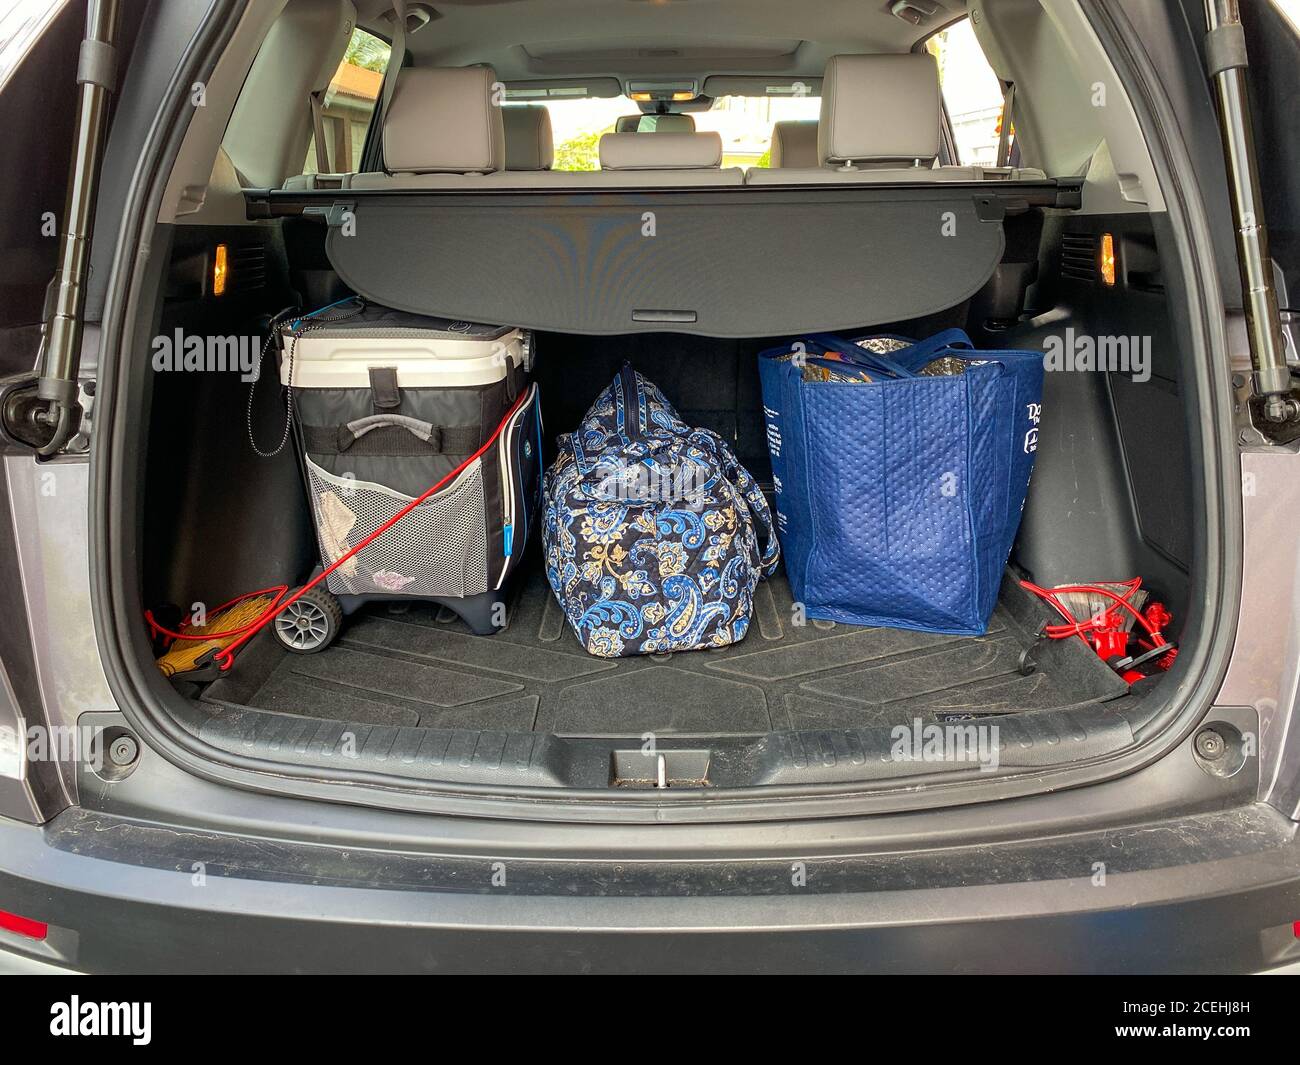 Ein Kofferraum mit Koffer und Kühler, bereit für einen Roadtrip. Konzept  Reisen mit dem Auto Stockfotografie - Alamy